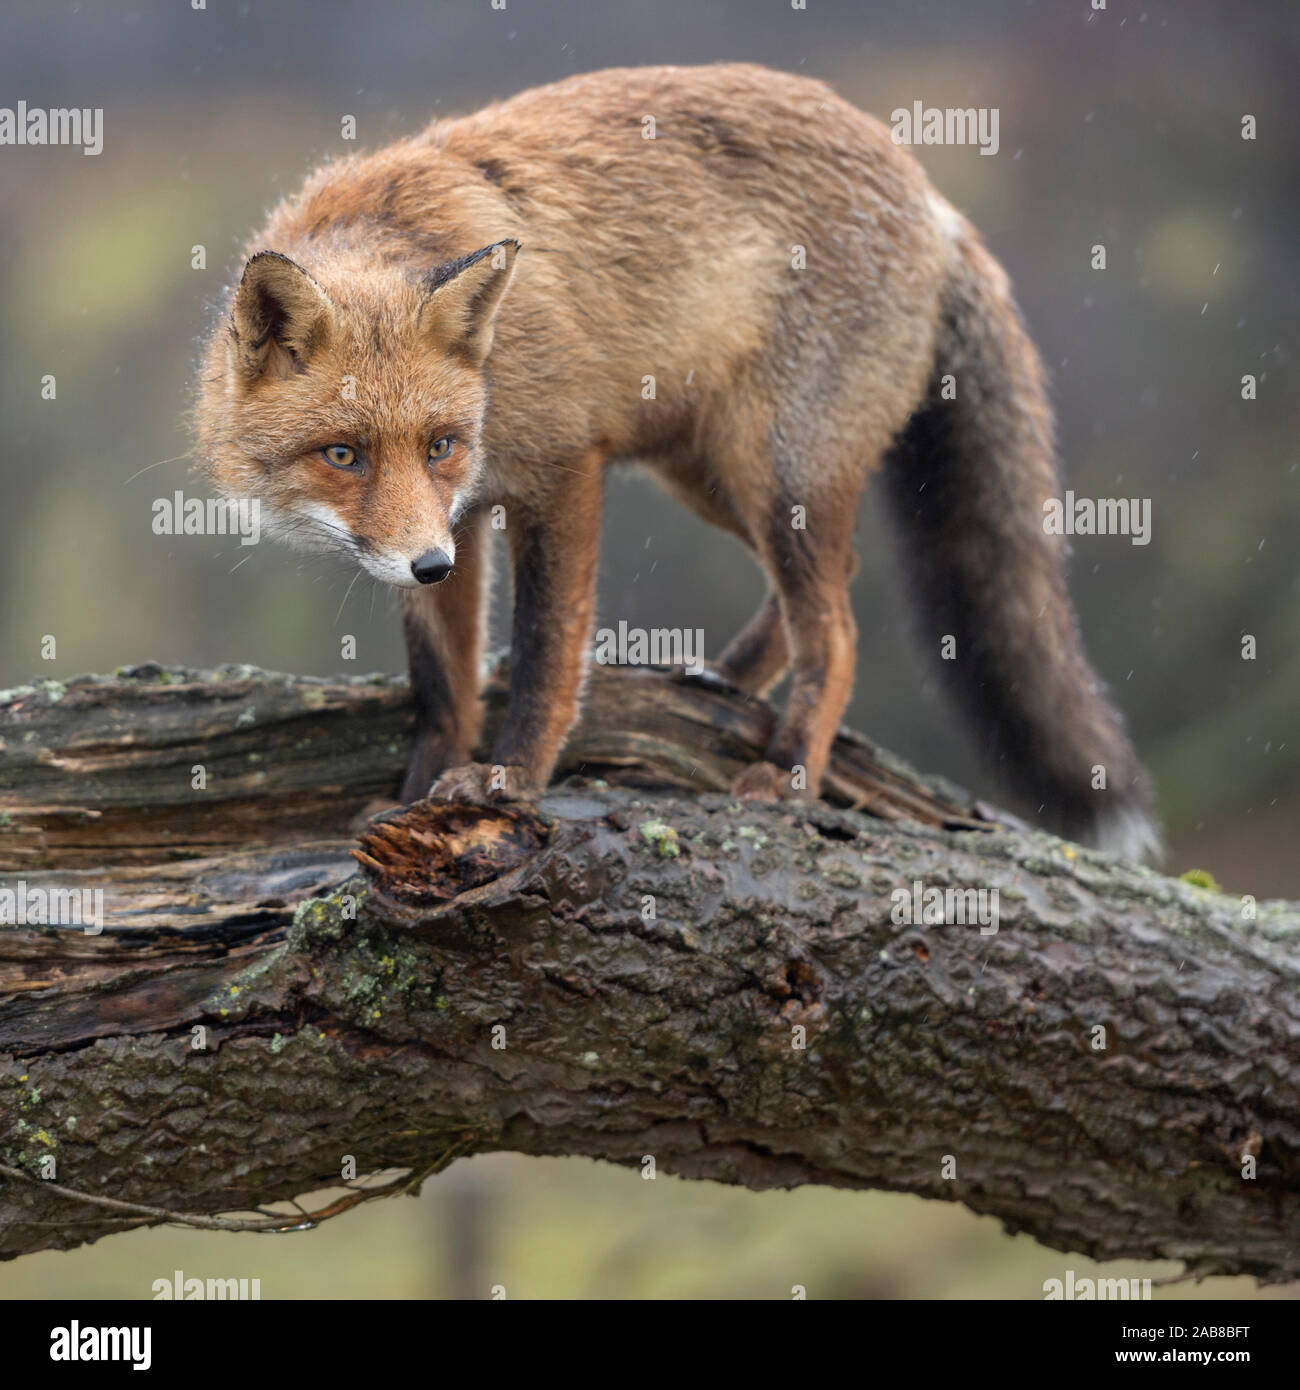 Red Fox/Rotfuchs (Vulpes vulpes) Erwachsenen, Klettern, stehend auf einem gefallenen Baumstamm, Peering, angespannt, gerissen, Wildlife, Europa. Stockfoto